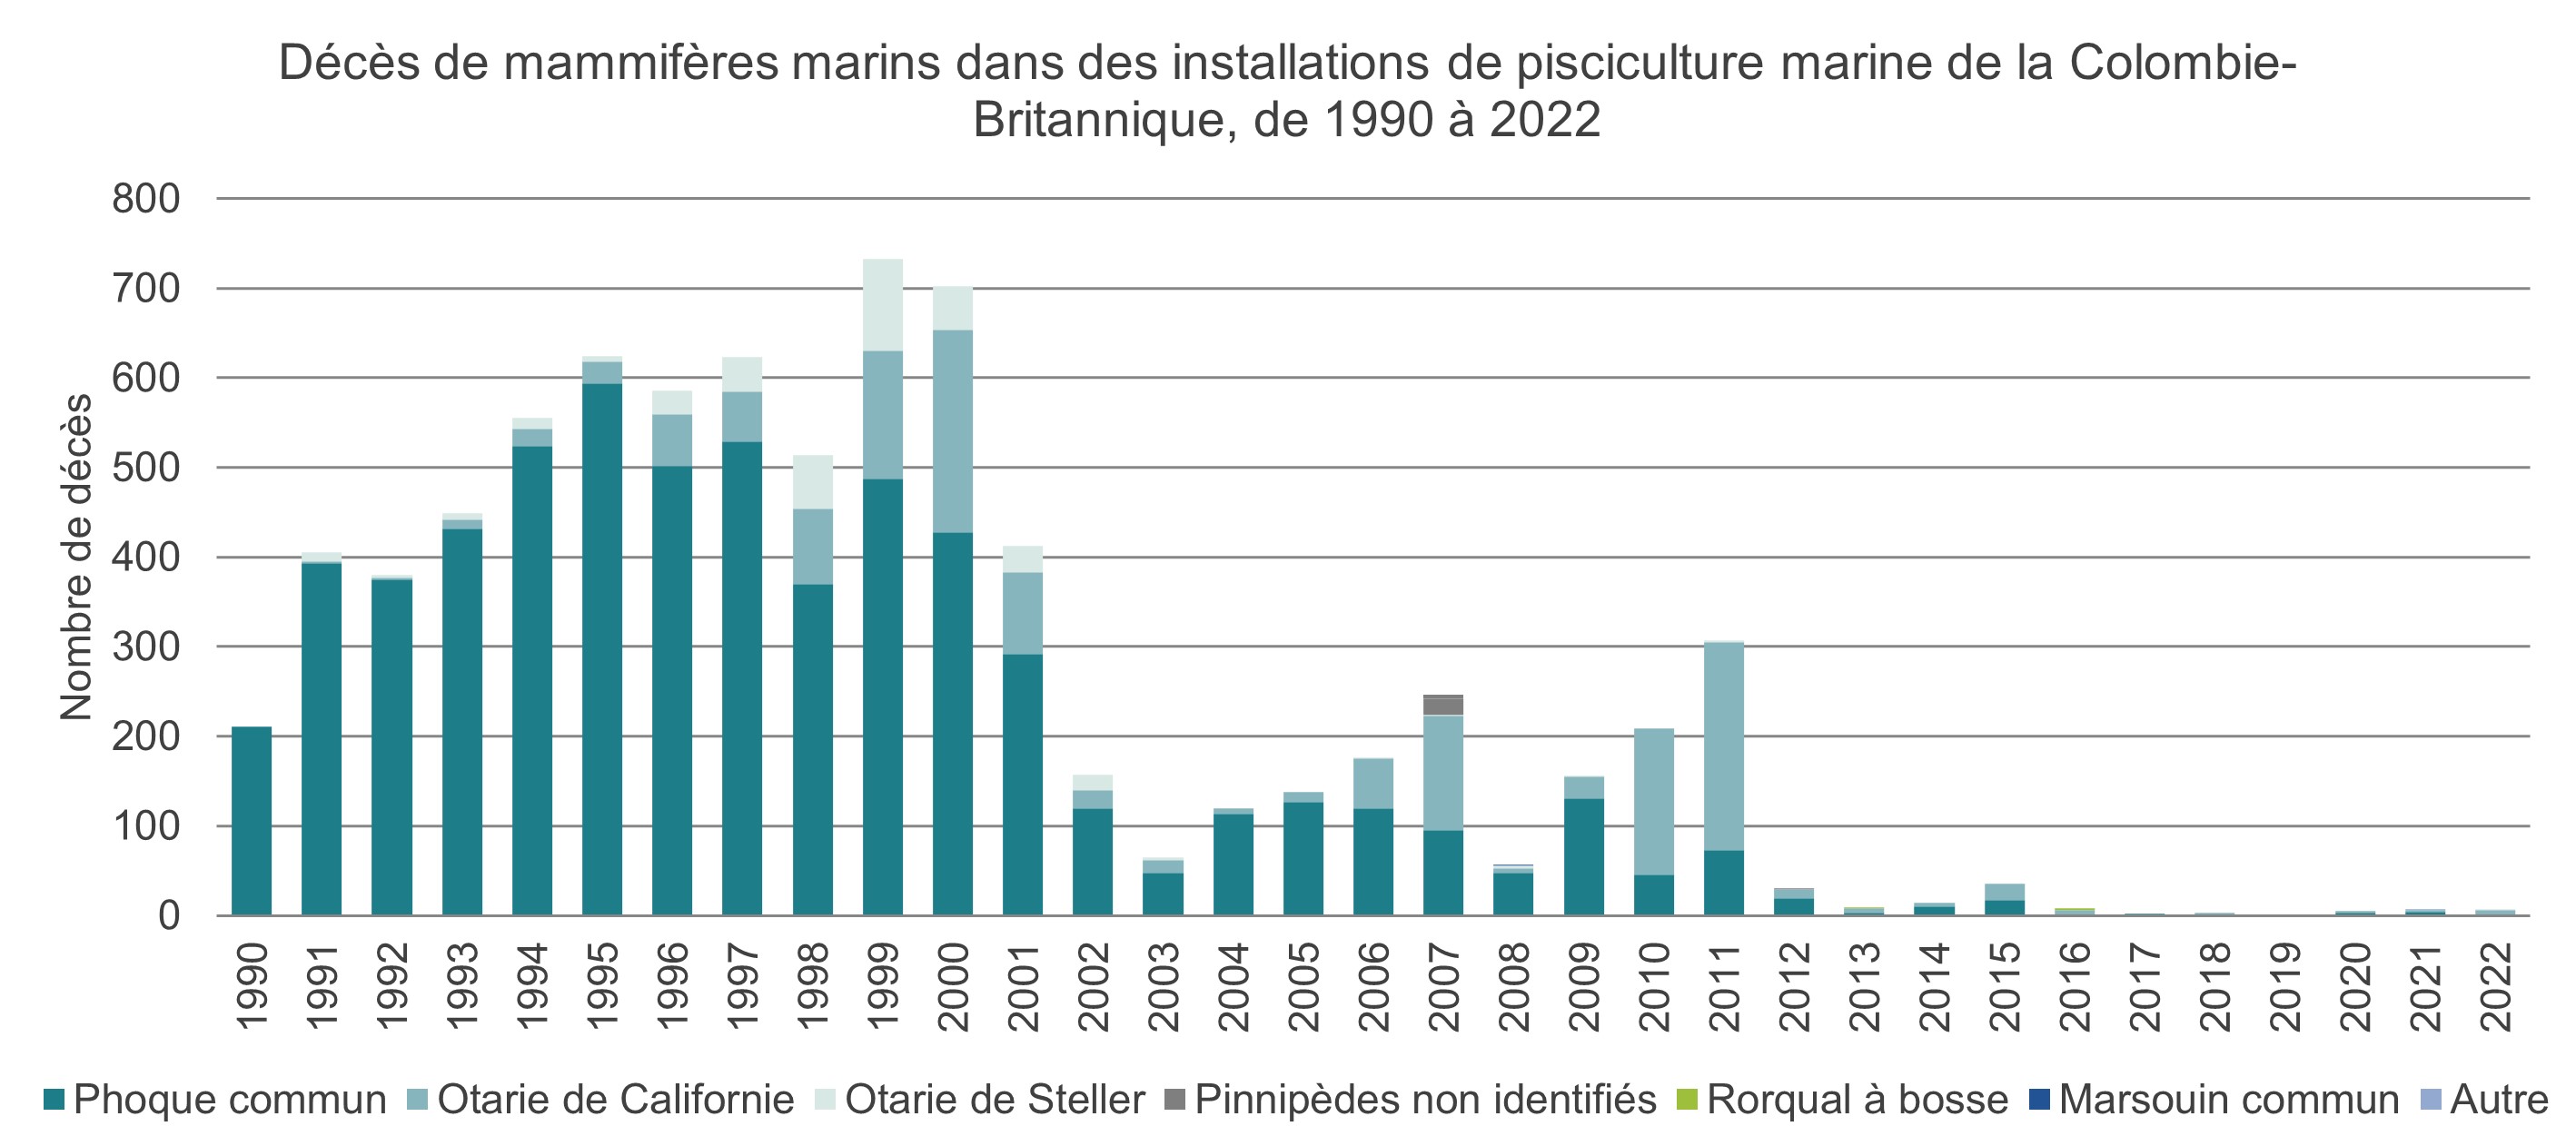 Graphique: Décès de mammifères marins dans des installations de pisciculture marine de la Colombie-Britannique, 1990 à 2022